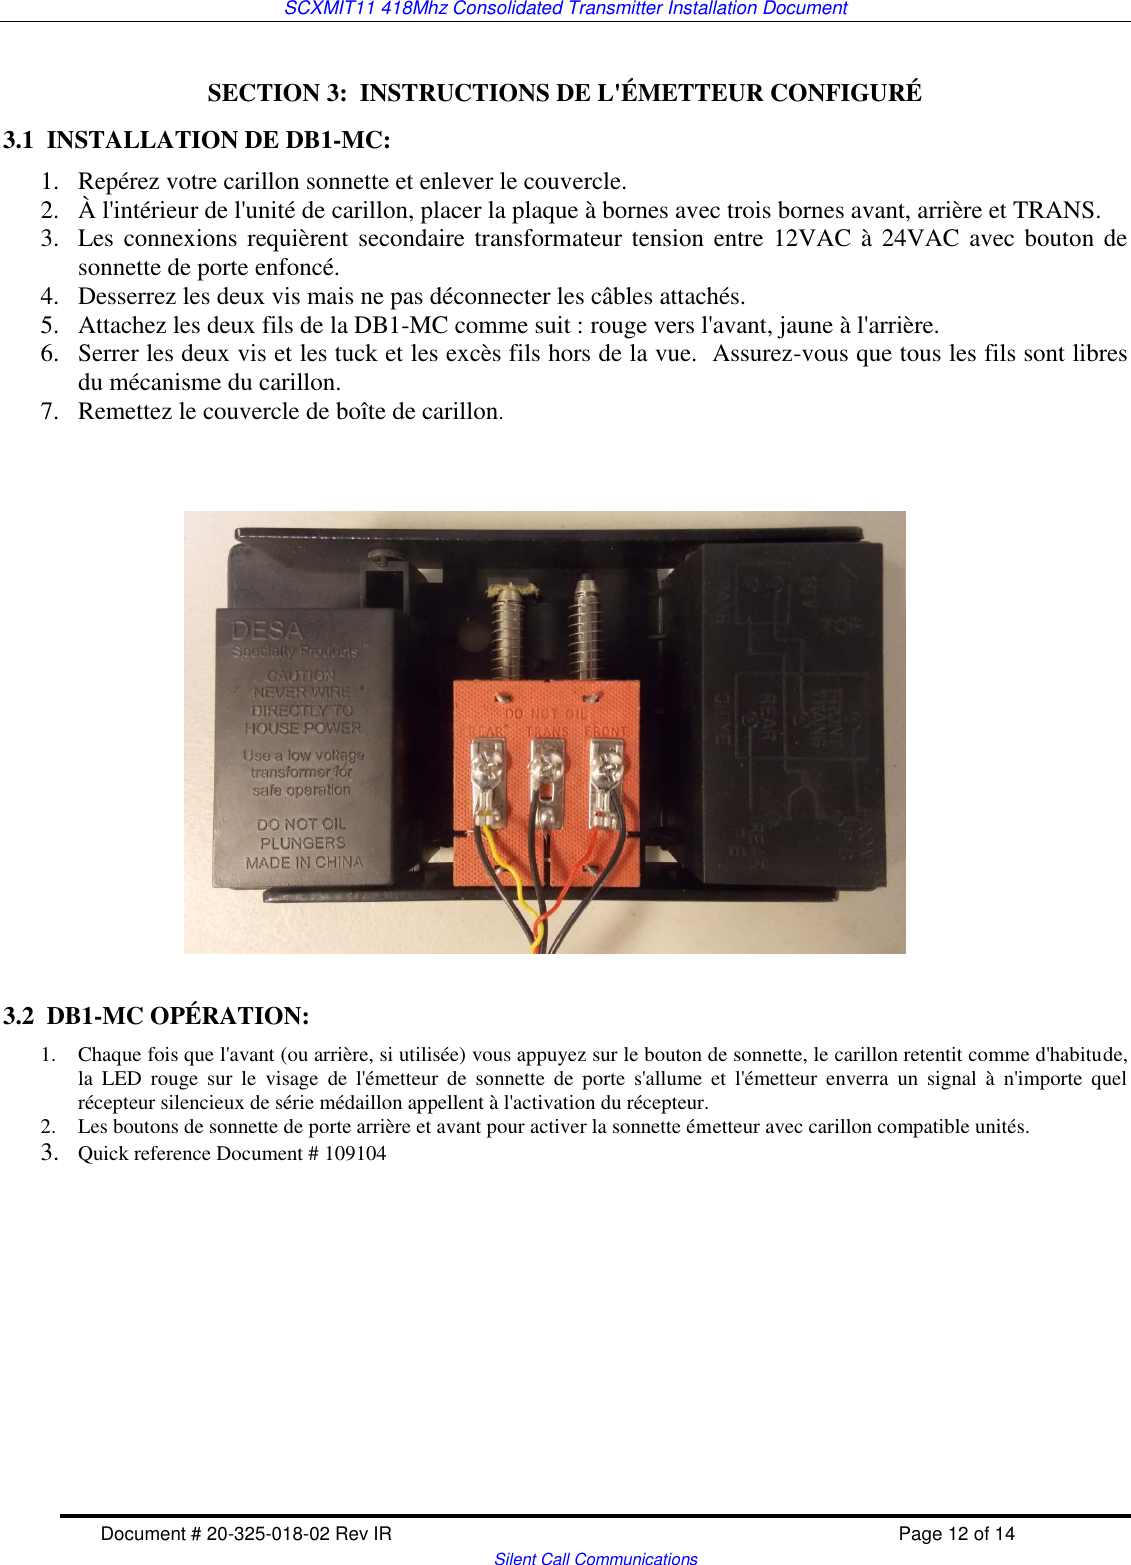 SCXMIT11 418Mhz Consolidated Transmitter Installation Document   Document # 20-325-018-02 Rev IR    Page 12 of 14   Silent Call Communications  SECTION 3:  INSTRUCTIONS DE L&apos;ÉMETTEUR CONFIGURÉ 3.1  INSTALLATION DE DB1-MC: 1. Repérez votre carillon sonnette et enlever le couvercle.   2. À l&apos;intérieur de l&apos;unité de carillon, placer la plaque à bornes avec trois bornes avant, arrière et TRANS.  3. Les connexions requièrent secondaire transformateur tension entre 12VAC à 24VAC avec bouton de sonnette de porte enfoncé.  4. Desserrez les deux vis mais ne pas déconnecter les câbles attachés.   5. Attachez les deux fils de la DB1-MC comme suit : rouge vers l&apos;avant, jaune à l&apos;arrière.   6. Serrer les deux vis et les tuck et les excès fils hors de la vue.  Assurez-vous que tous les fils sont libres du mécanisme du carillon.  7. Remettez le couvercle de boîte de carillon.                         3.2  DB1-MC OPÉRATION: 1. Chaque fois que l&apos;avant (ou arrière, si utilisée) vous appuyez sur le bouton de sonnette, le carillon retentit comme d&apos;habitude, la  LED  rouge  sur  le  visage  de  l&apos;émetteur  de  sonnette  de  porte  s&apos;allume  et  l&apos;émetteur  enverra  un  signal  à  n&apos;importe  quel récepteur silencieux de série médaillon appellent à l&apos;activation du récepteur. 2. Les boutons de sonnette de porte arrière et avant pour activer la sonnette émetteur avec carillon compatible unités.   3. Quick reference Document # 109104        